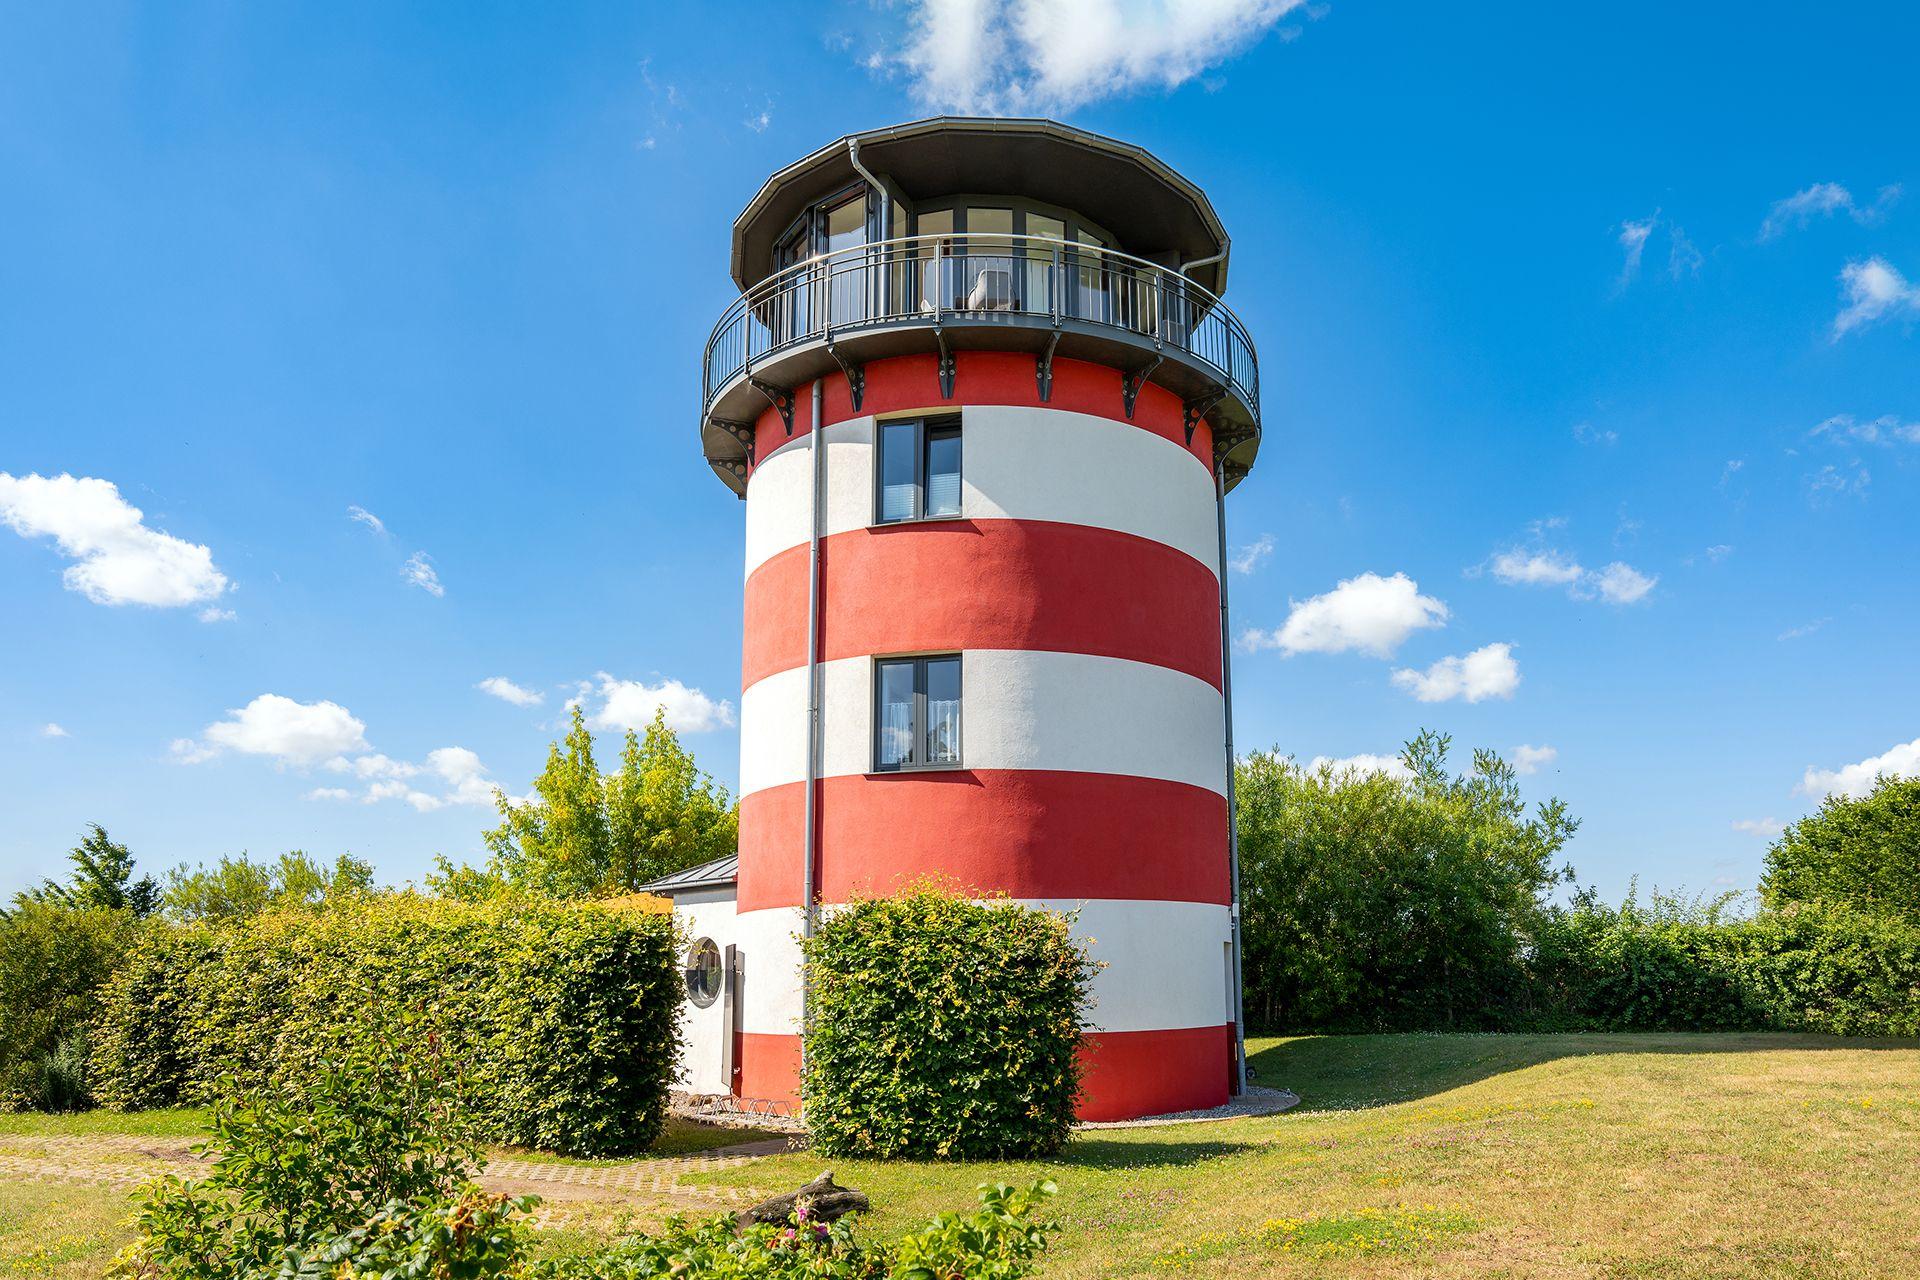 Leuchty - Wohnleuchtturm Ferienhaus in Mecklenburg Vorpommern